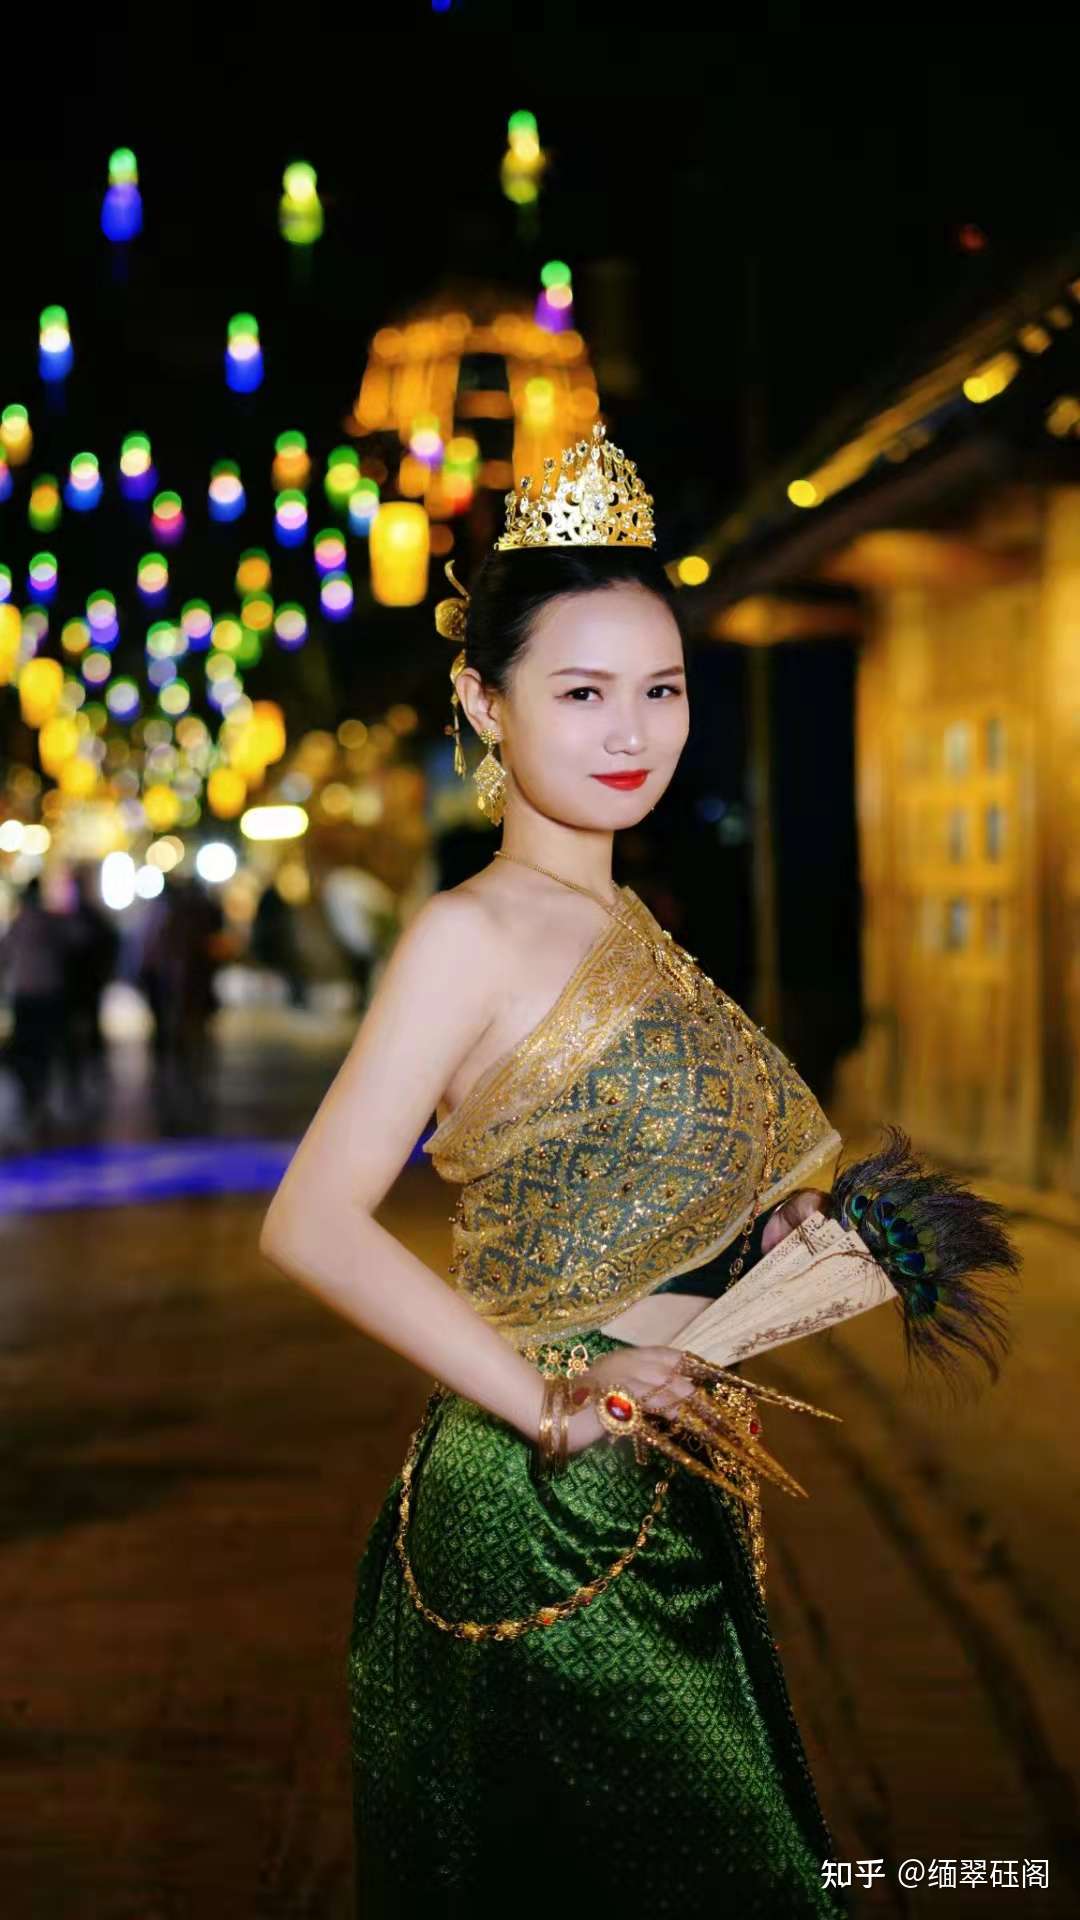 缅翠砡阁 的想法: 缅甸美女 